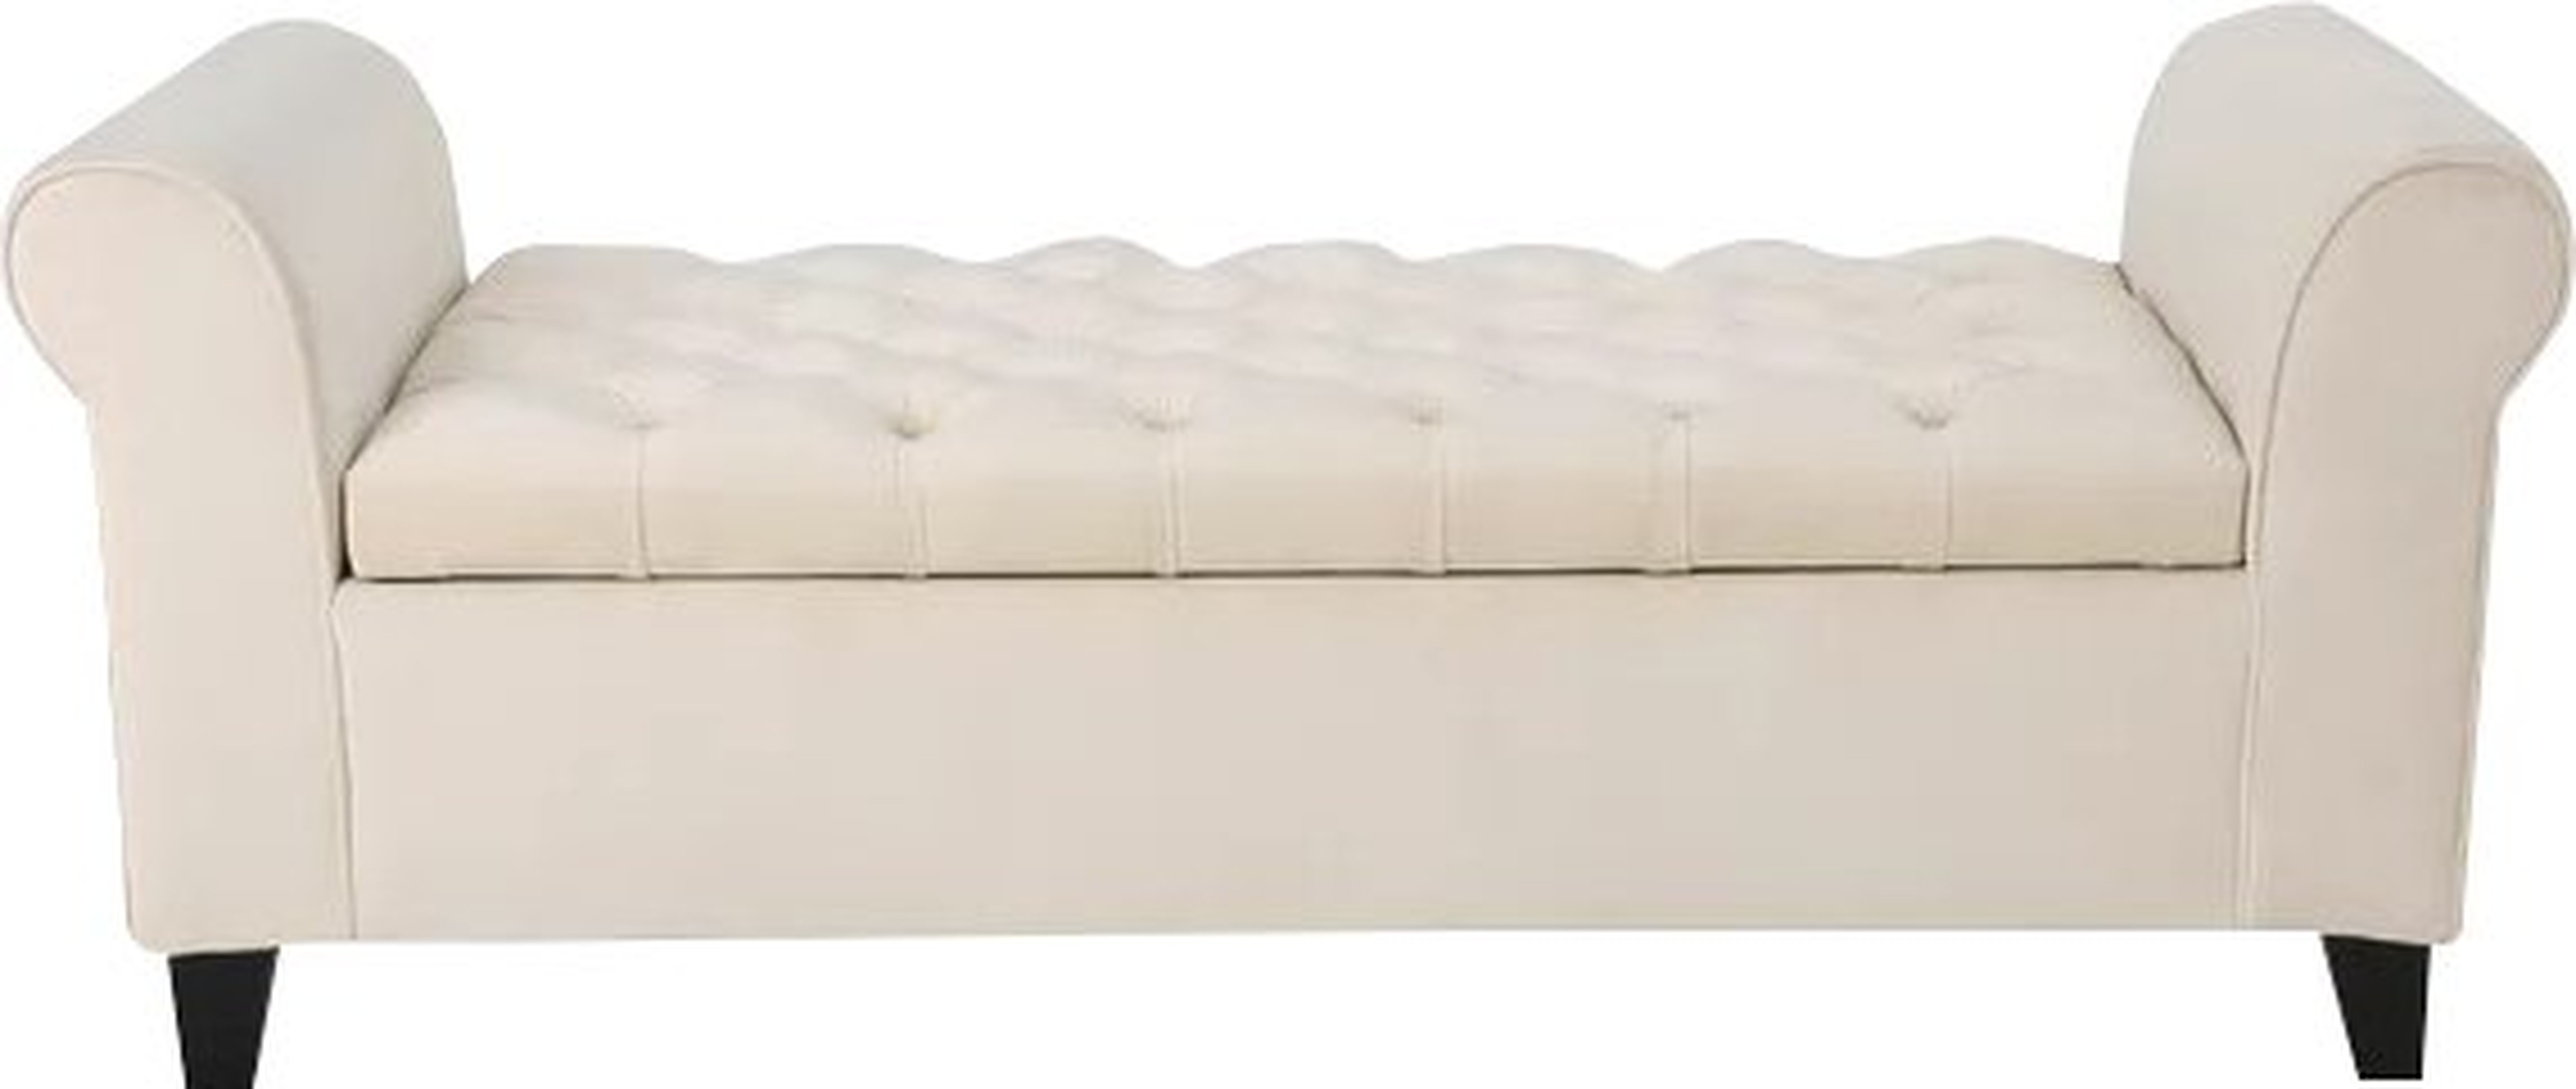 Claxton Upholstered Storage Bench - Wayfair